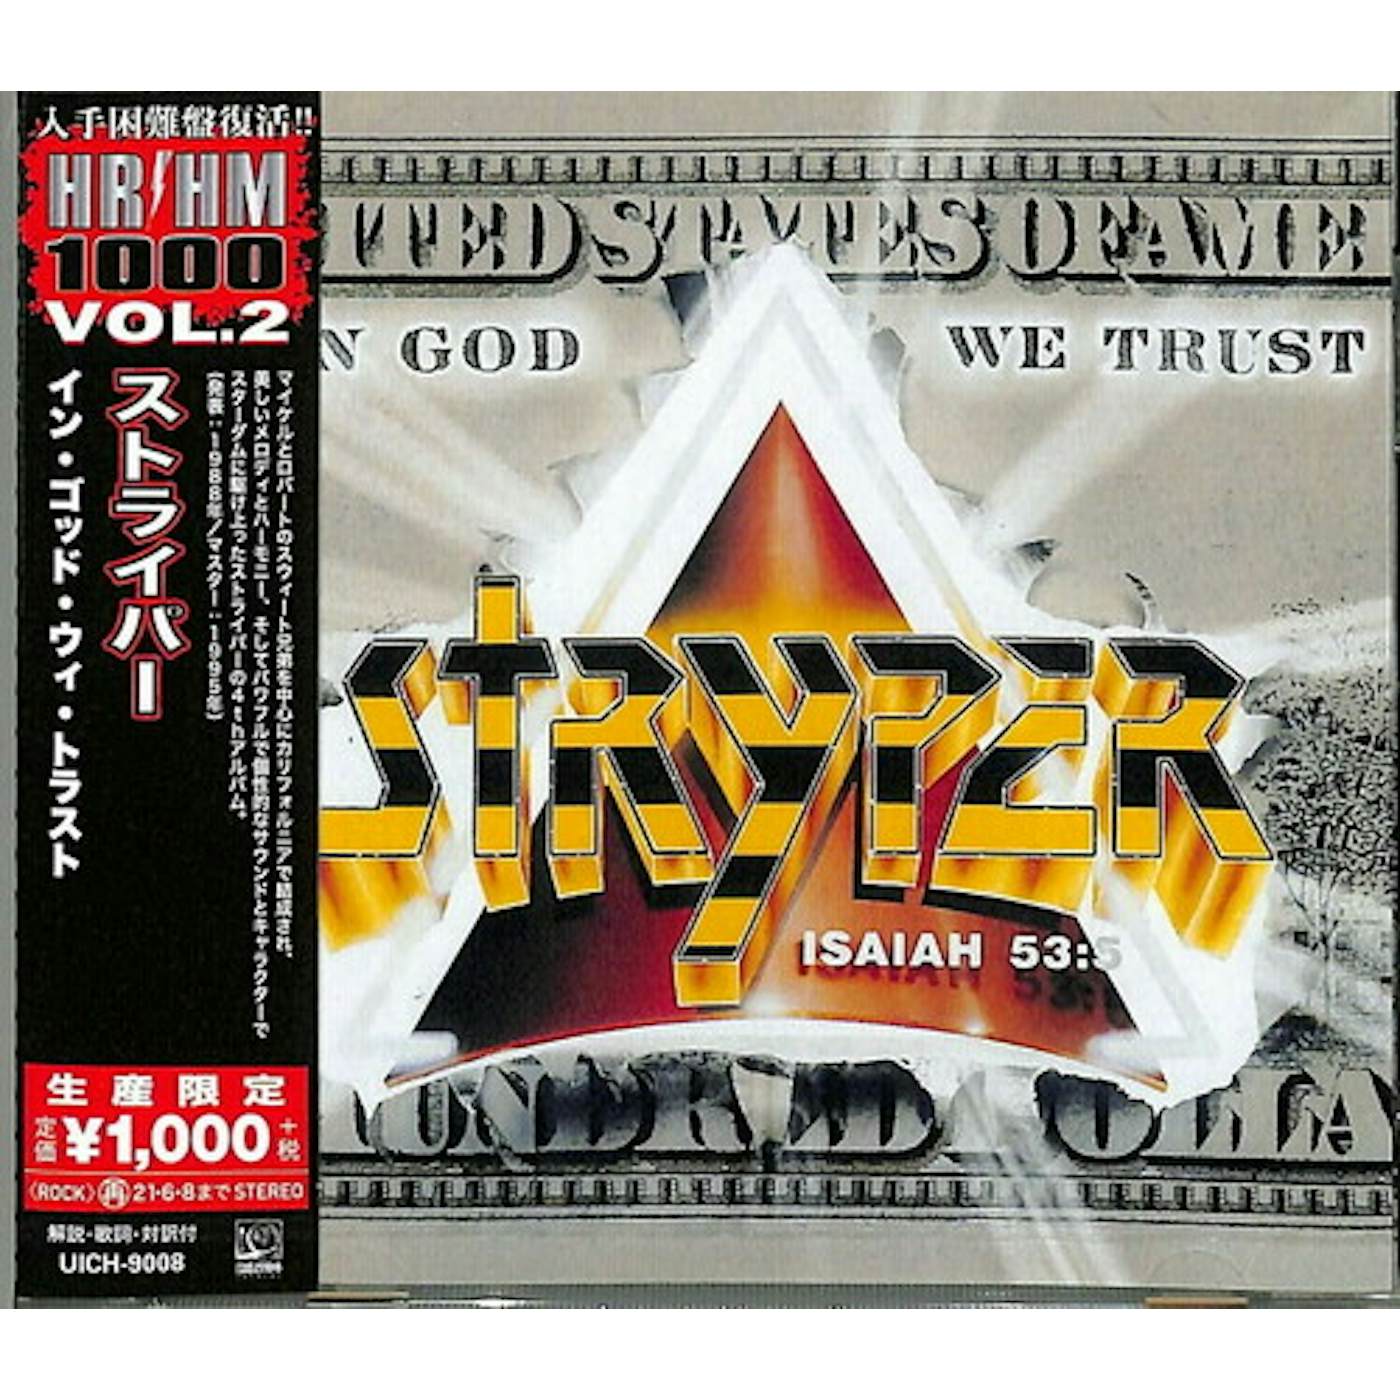 Limited Edition Gold Vinyl Battle Van – Stryper Limited